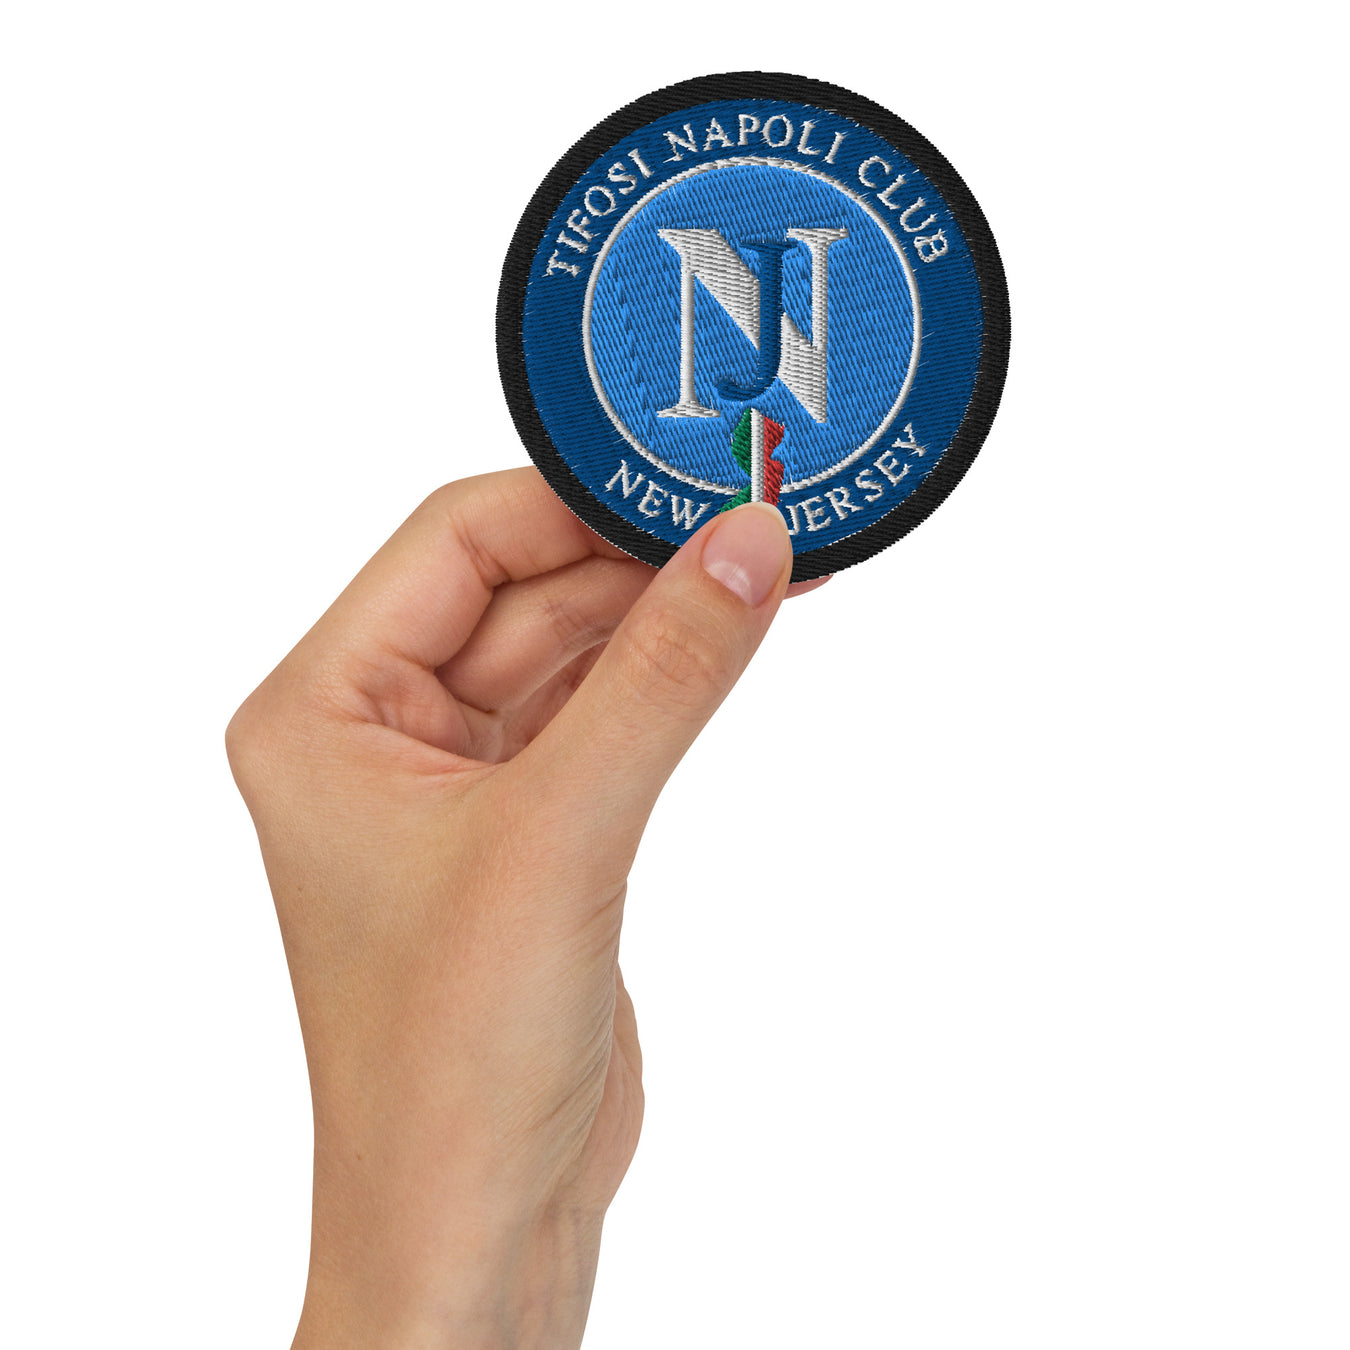 Napoli Club Patch